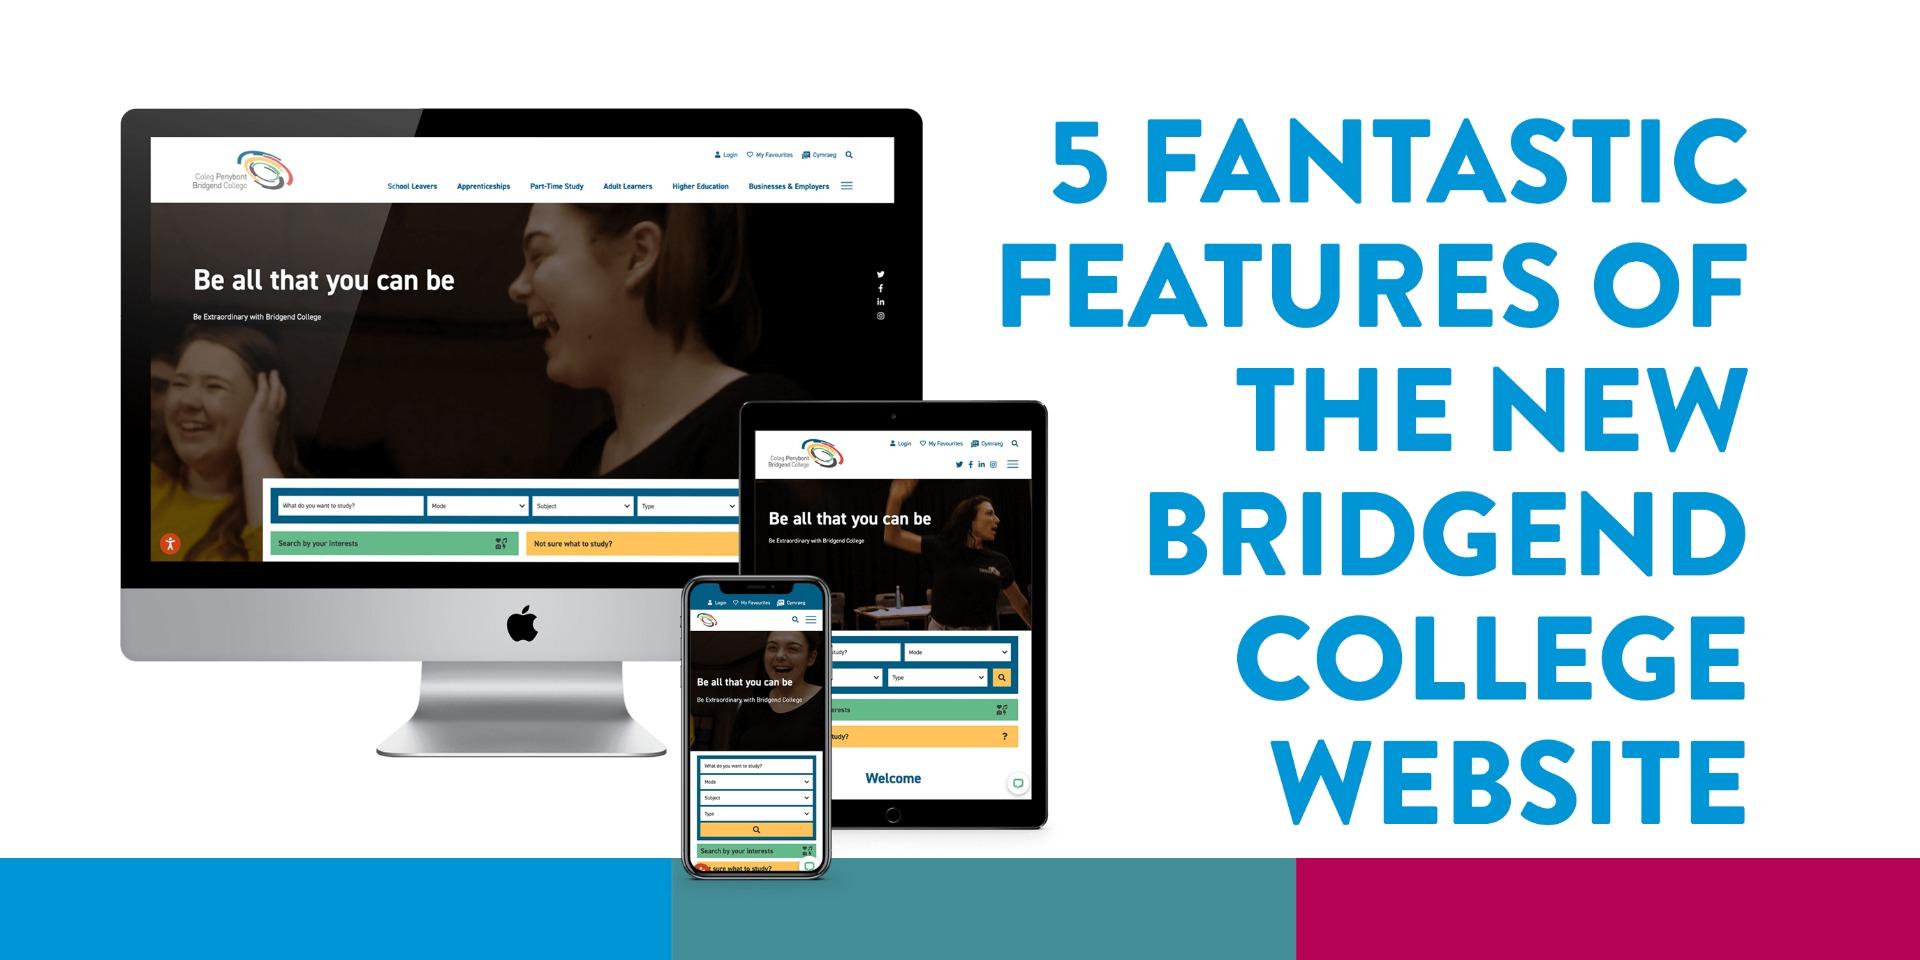 Five fantastic features of the new Bridgend College website